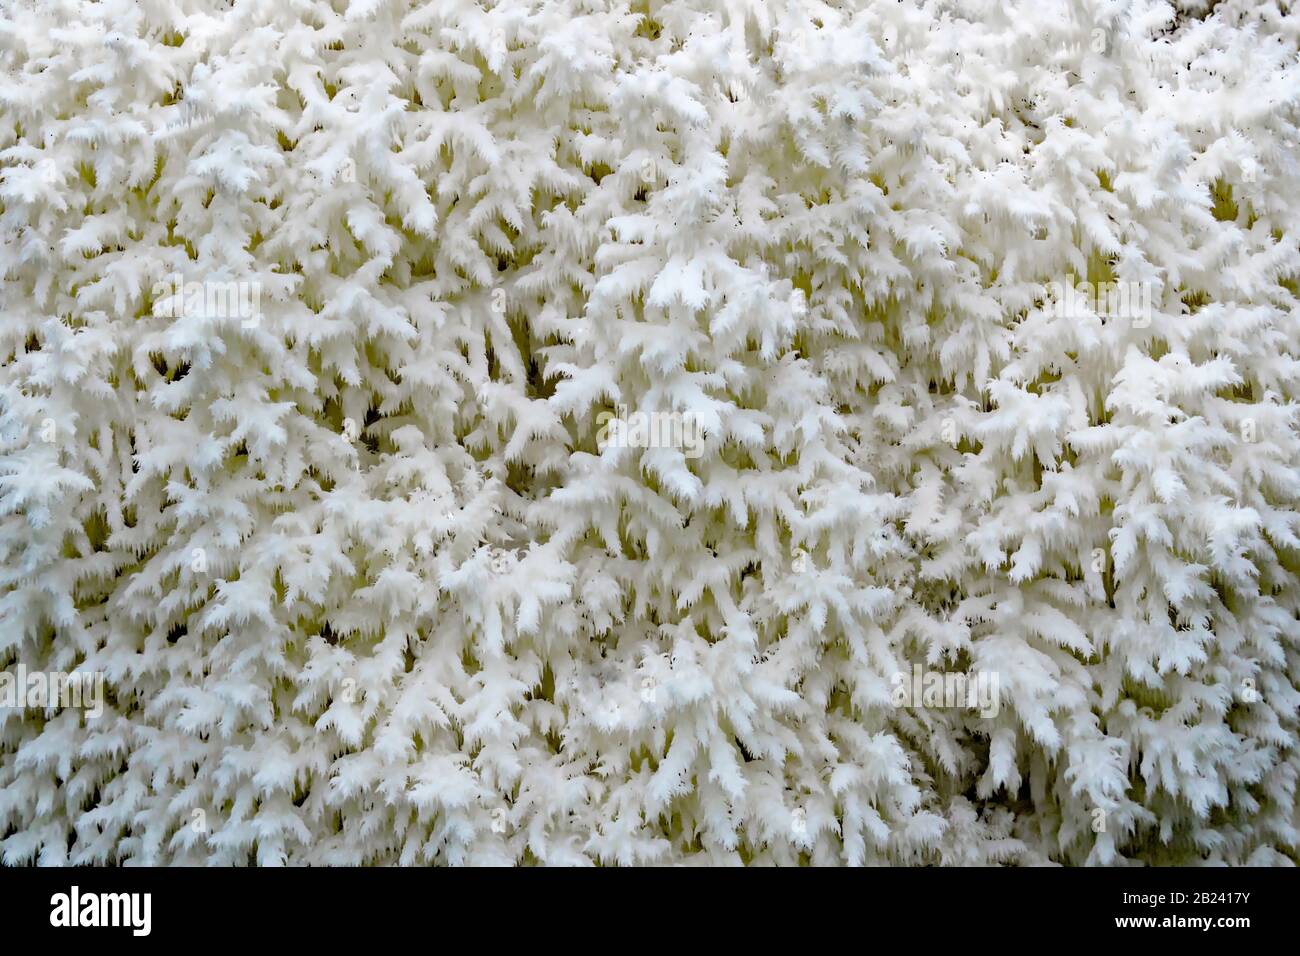 Eine genaue Darstellung der Details des Coral-Zahnpilzes, des Hericium Coralloides; Stockfoto